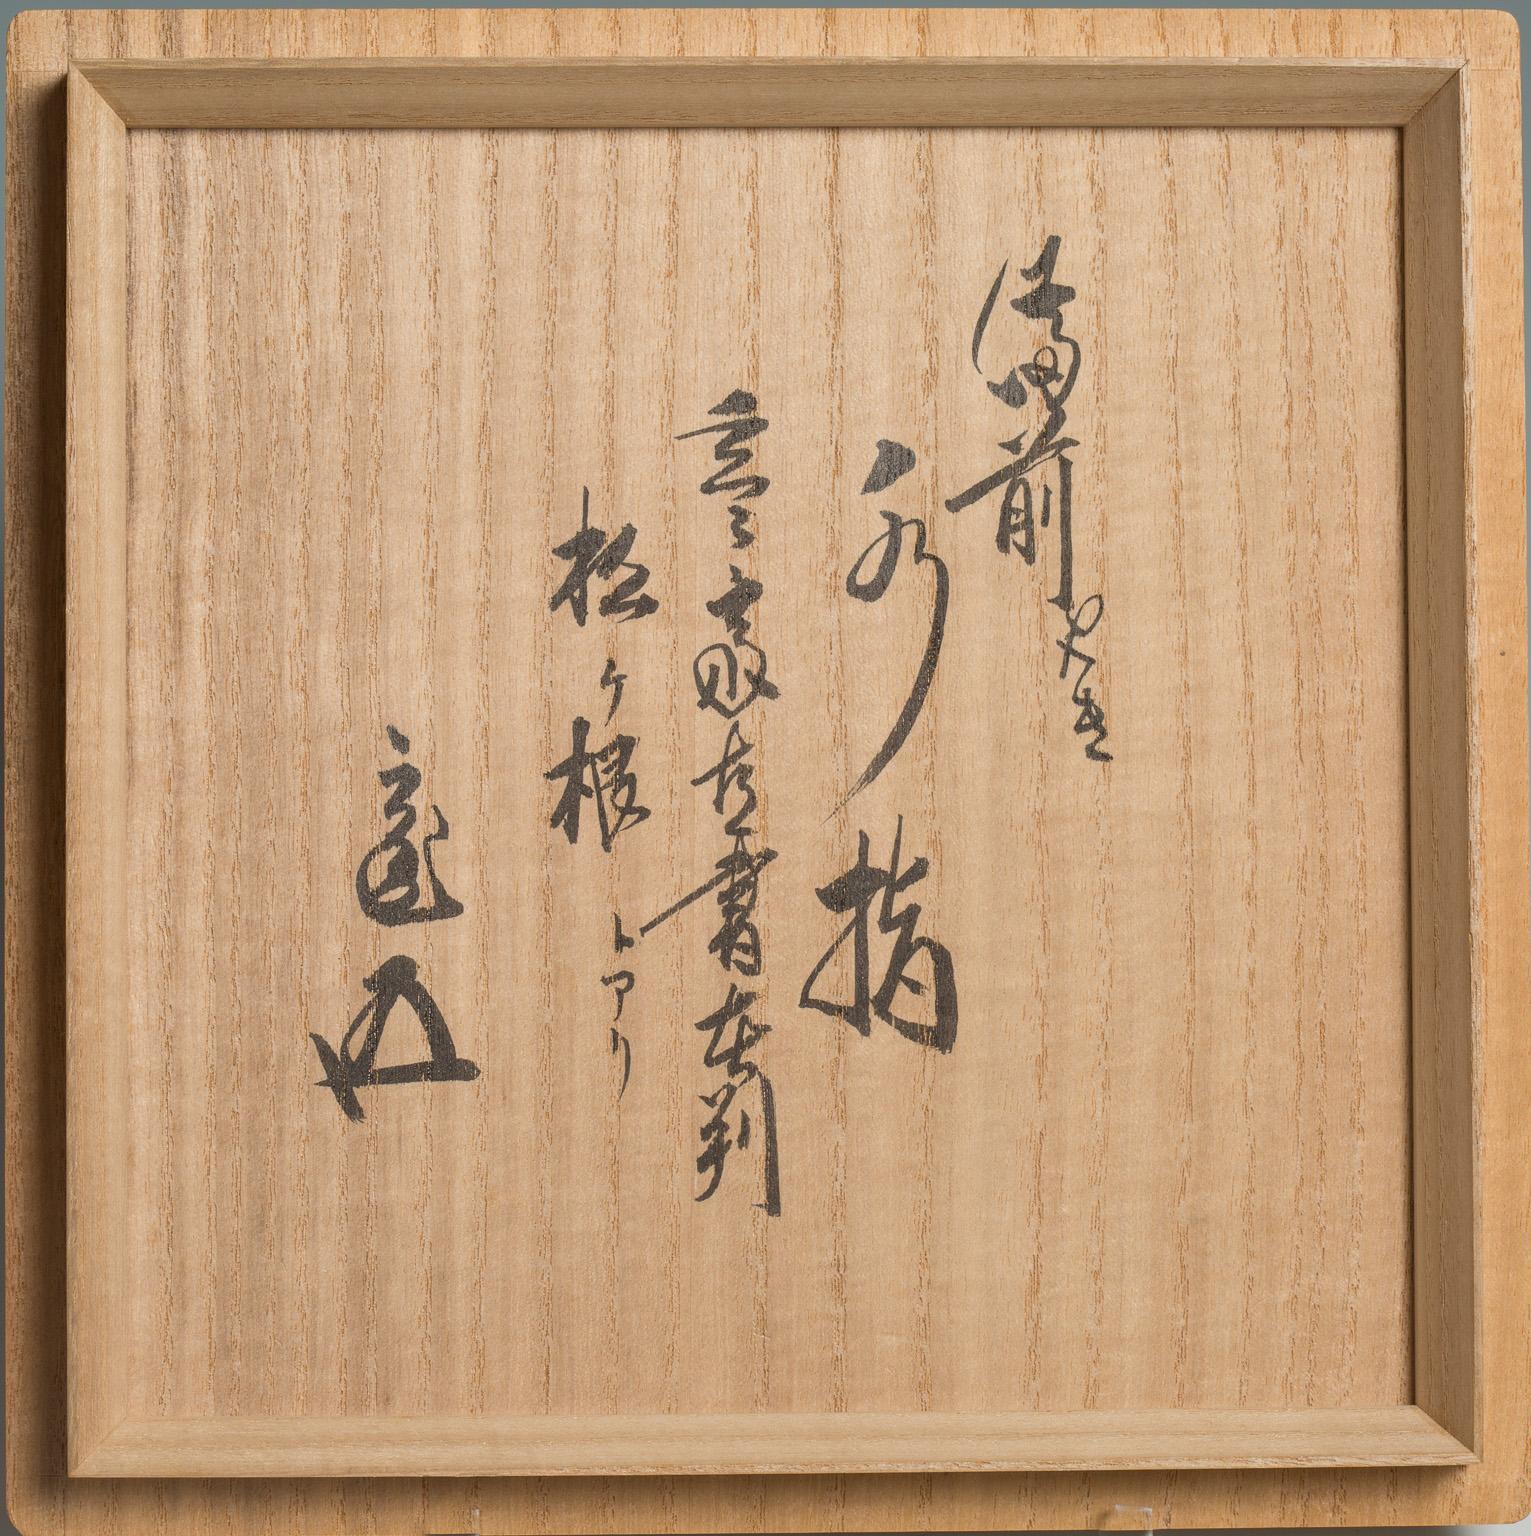 Japanese Ko-Bizen Water Jar ‘Mizusashi’ Named “Matsugane”, 16th Century 12